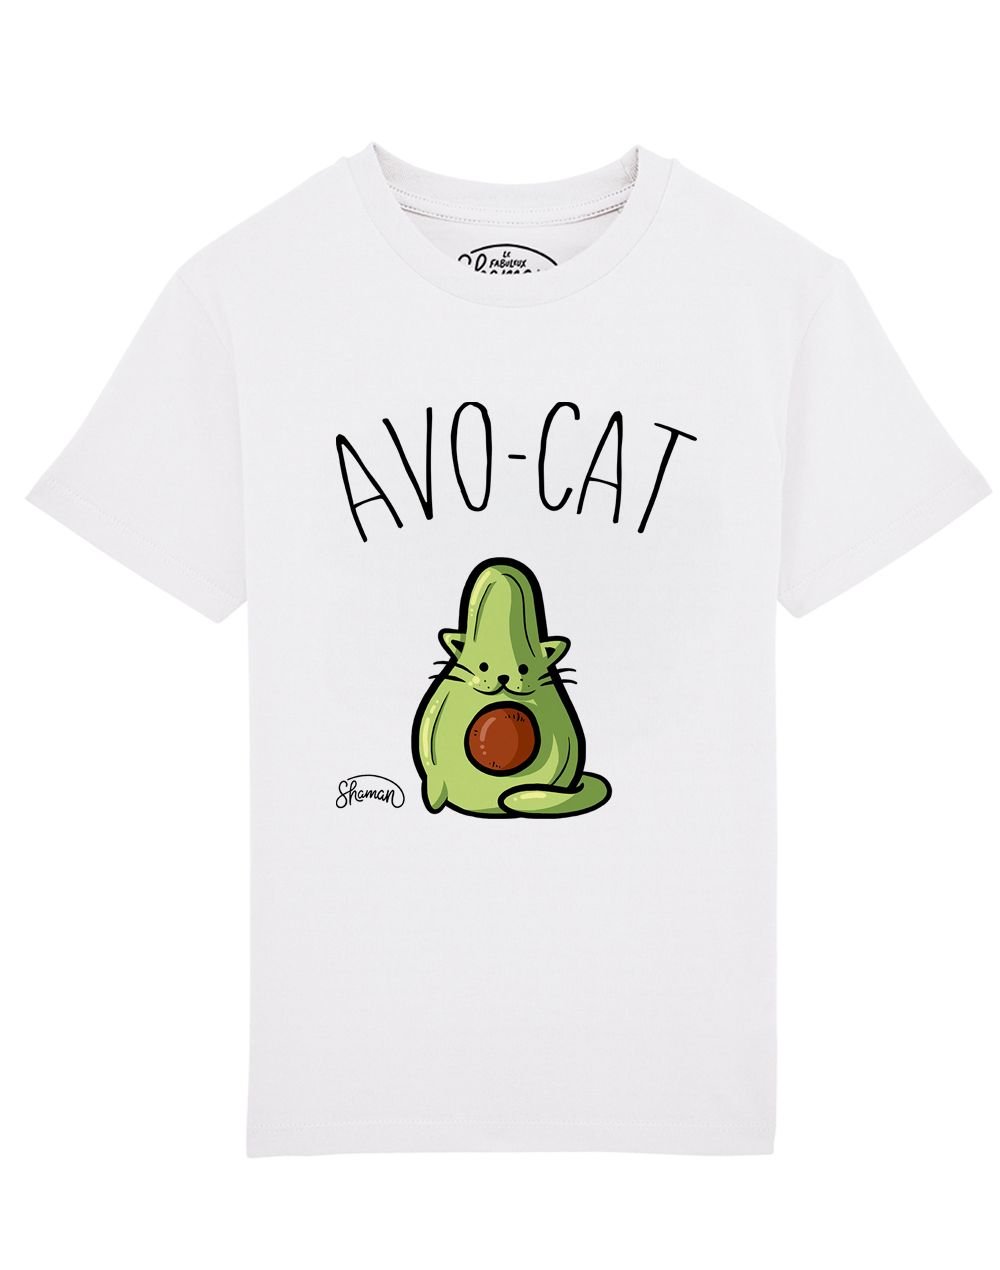 Tee shirt Avo-cat